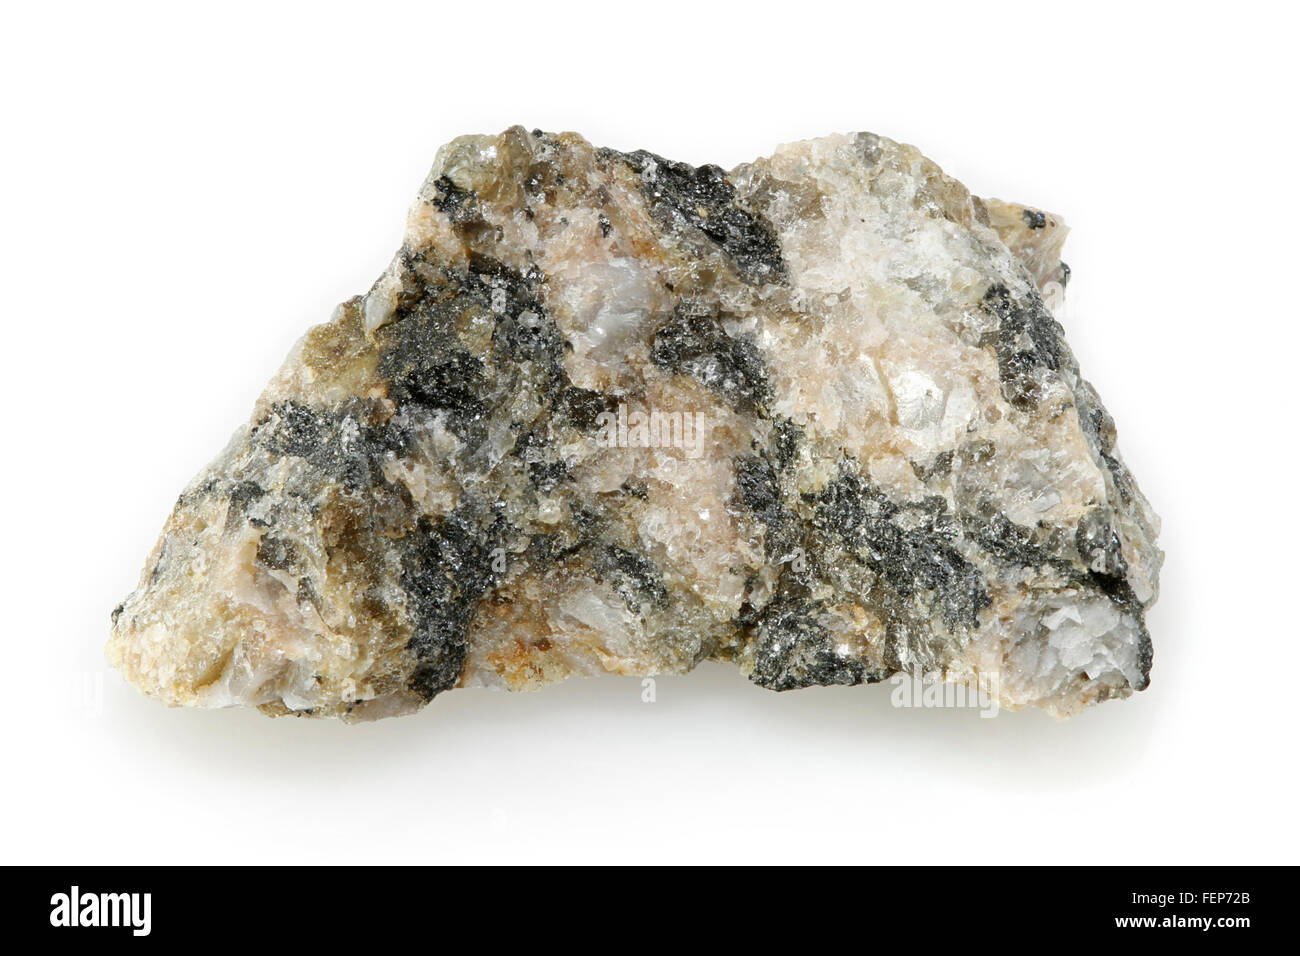 Granito roccia ignea Plutonic Rock, Quebec, Canada Foto Stock